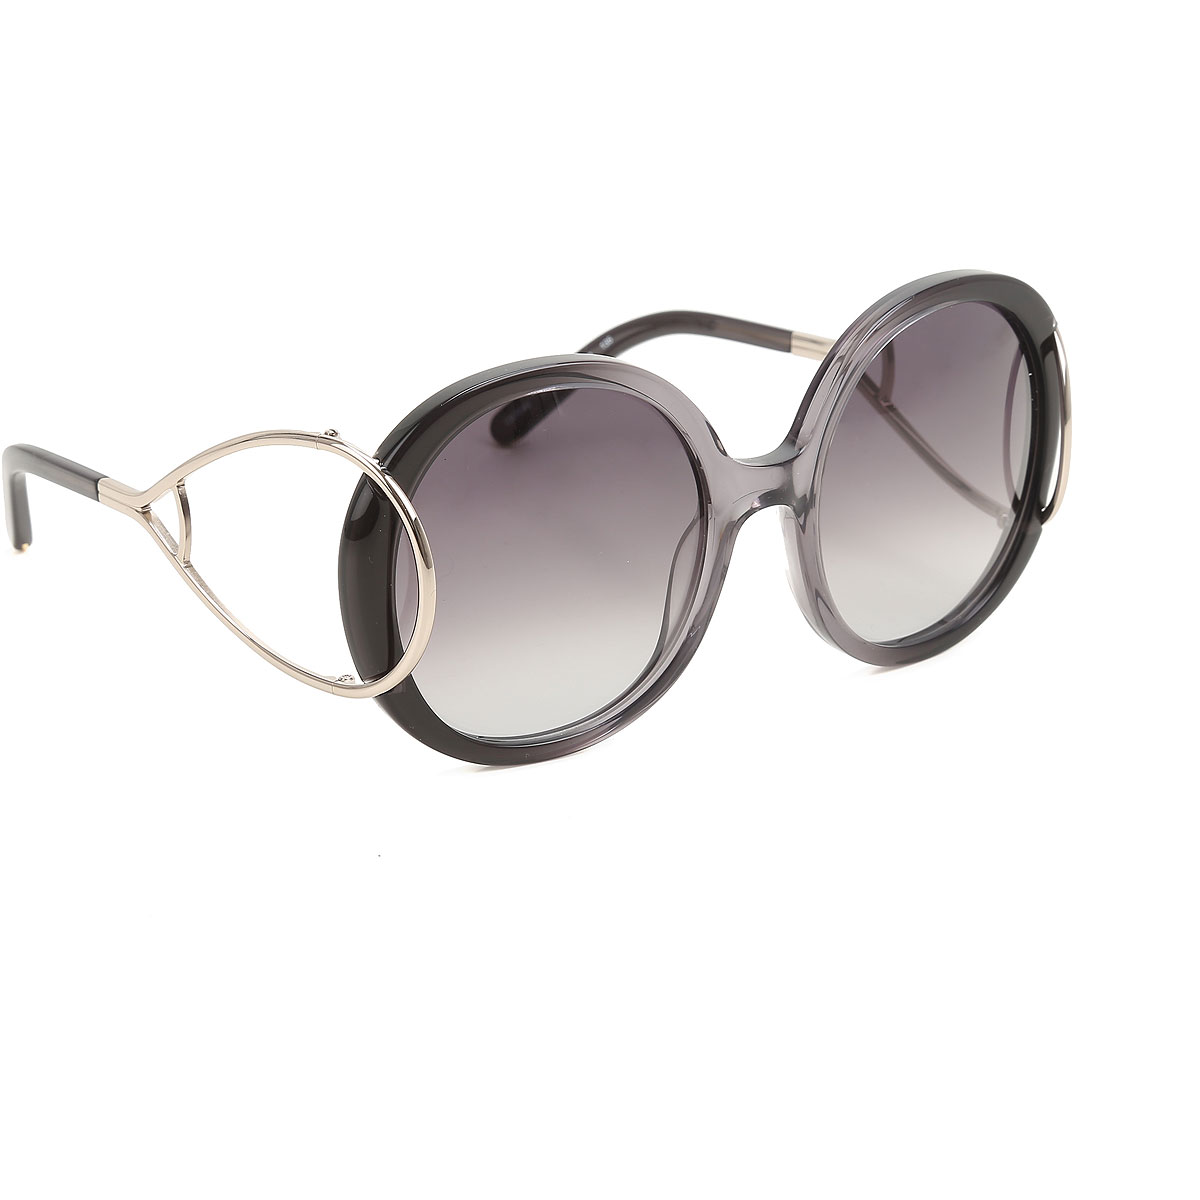 Sunglasses Chloe, Style code: ce703s-046-N10